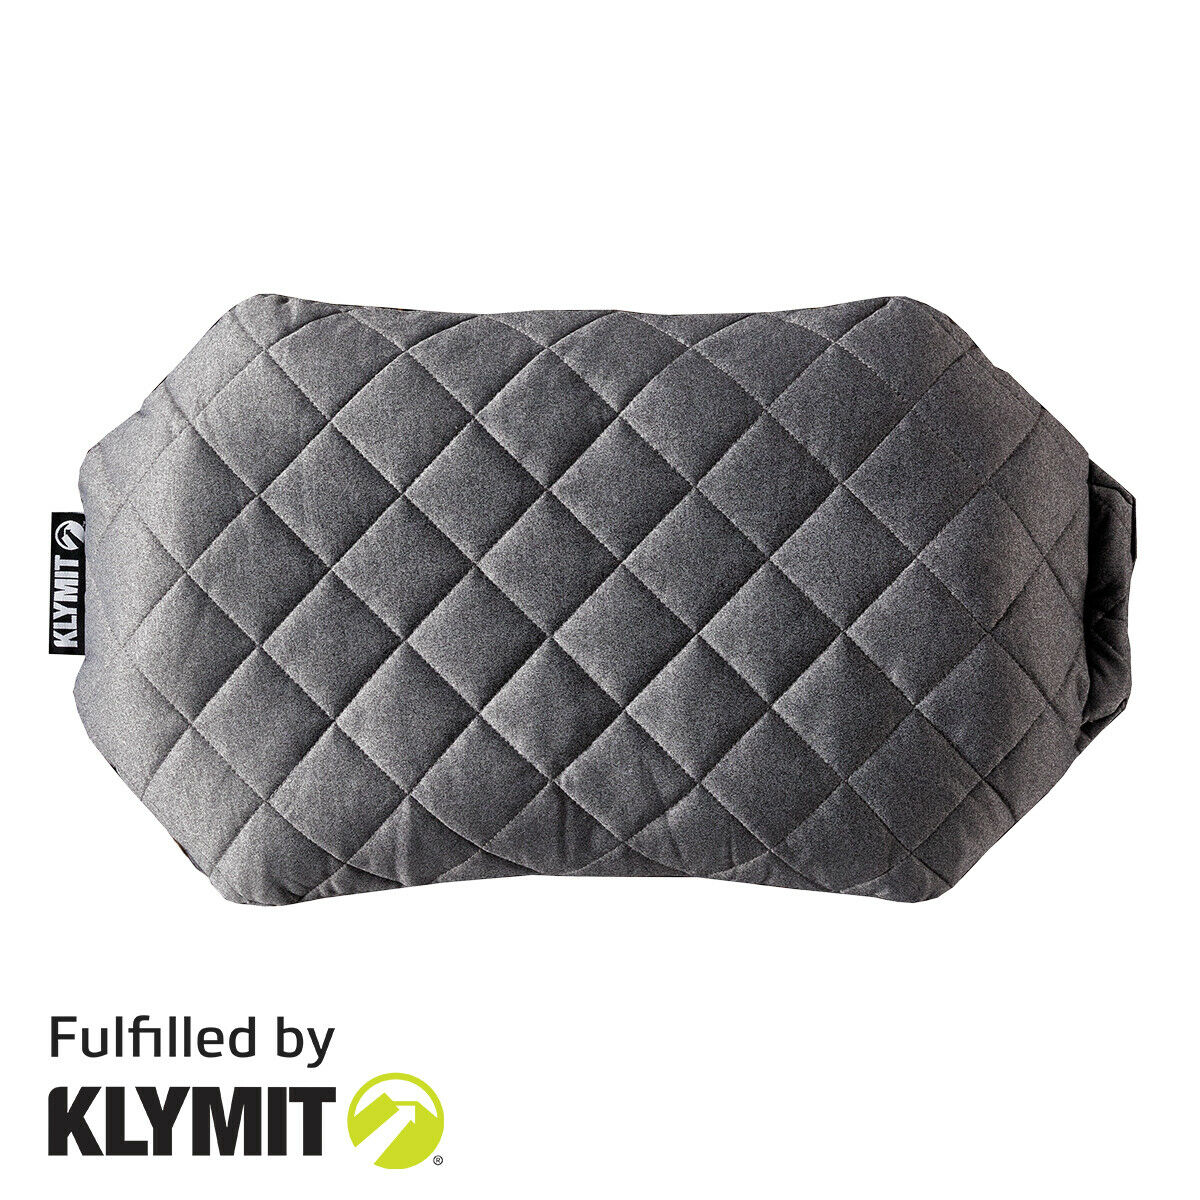 Klymit Luxe Pillow Oversized Camping Pillow Lightweight - Factory Second